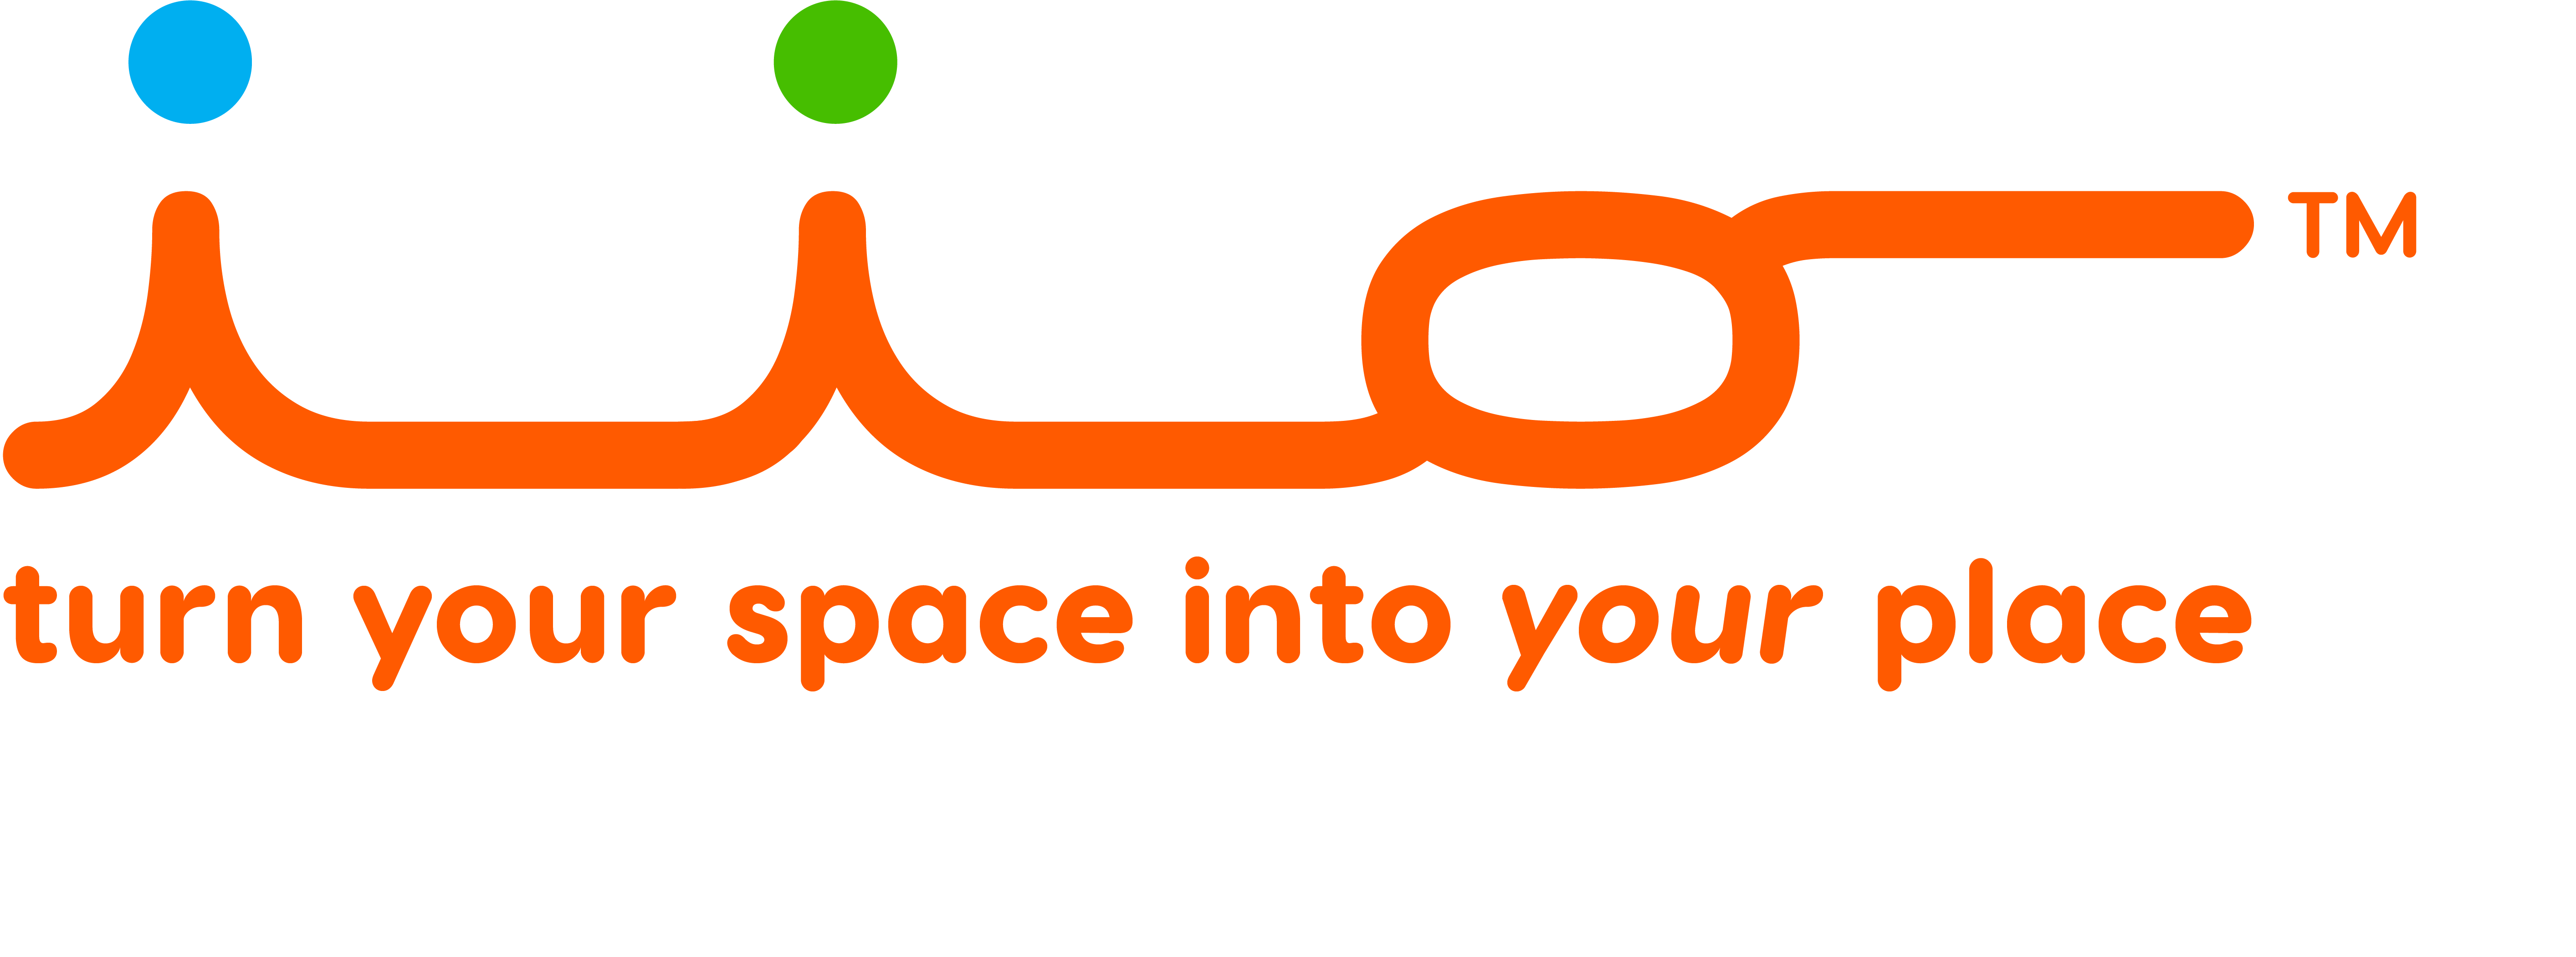 iio Logo Trademark with slogan